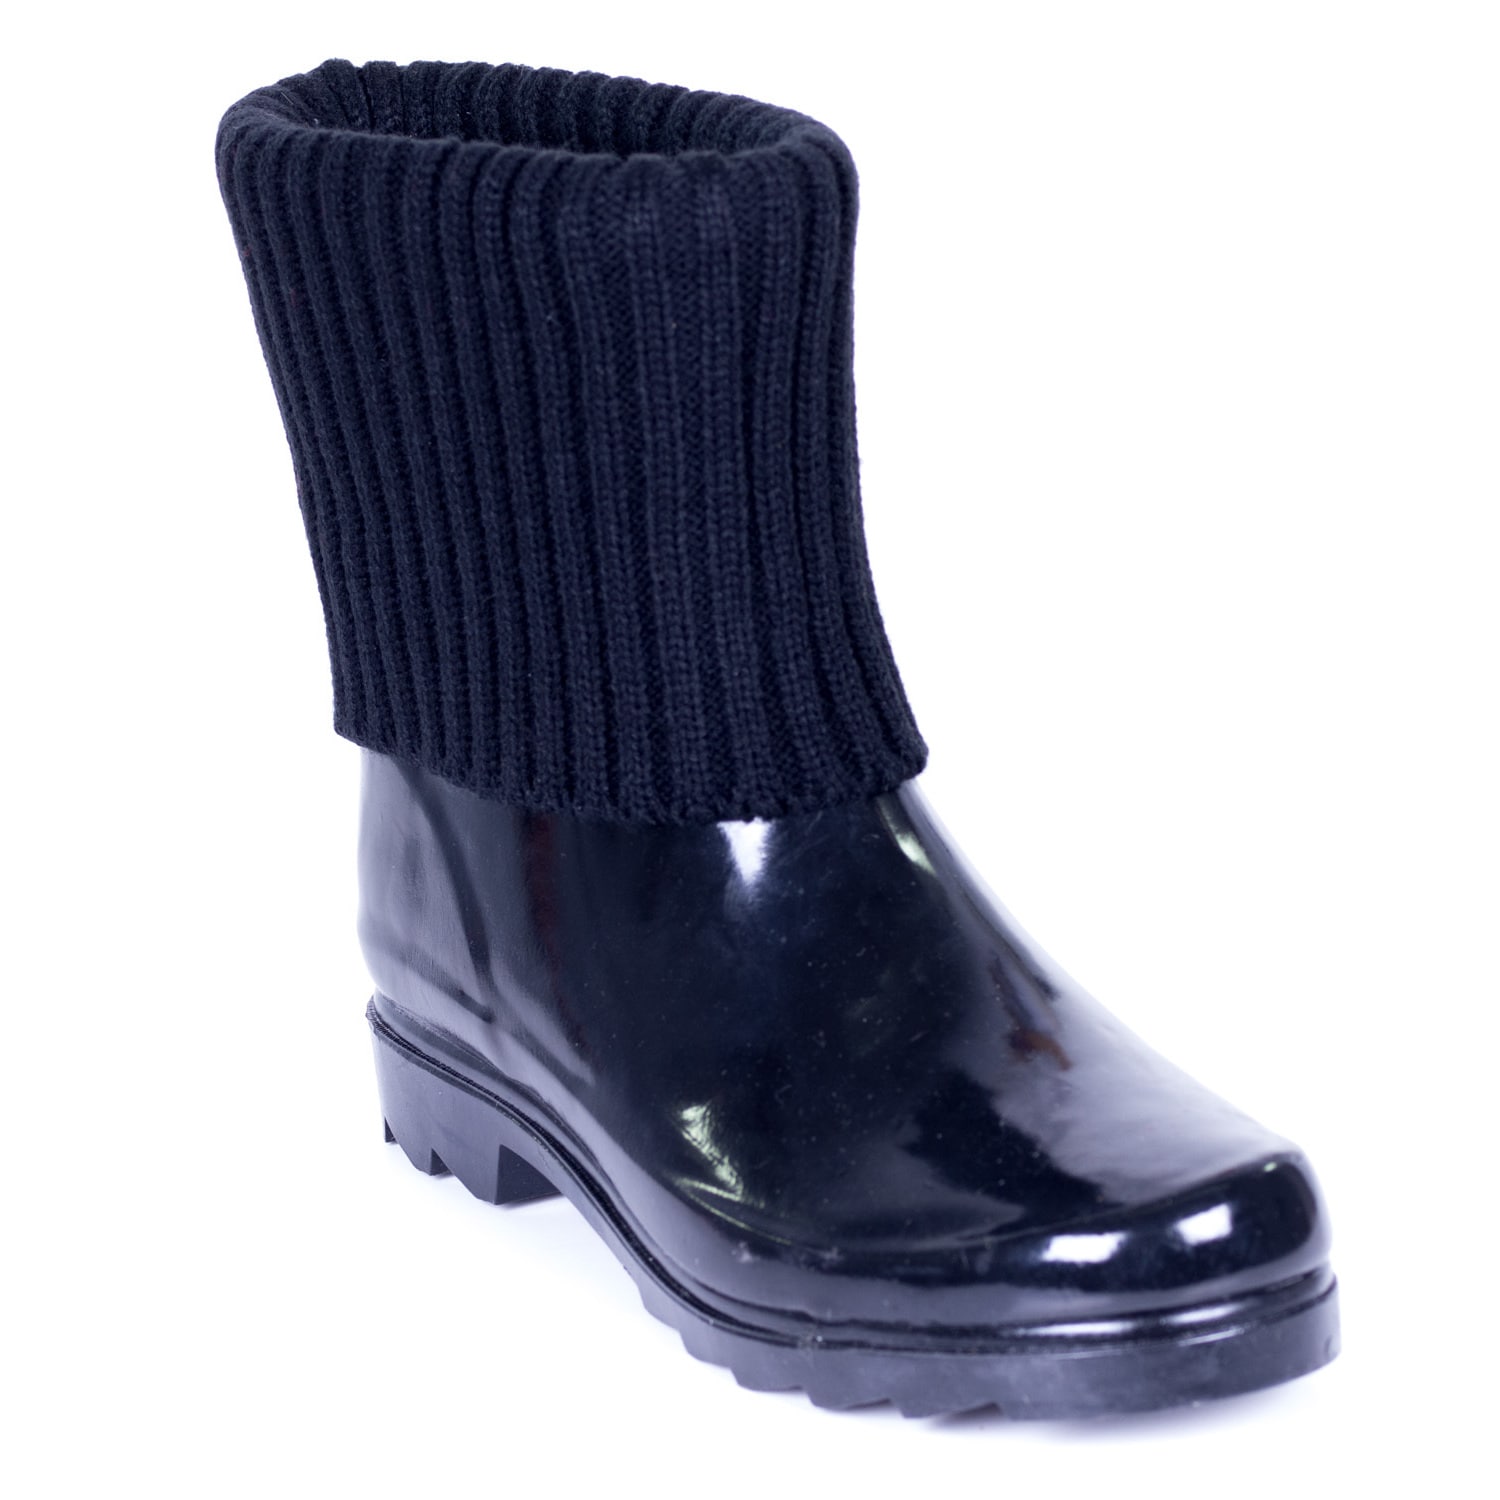 Rubber Black Knit Sock Cuff Rain Boots 